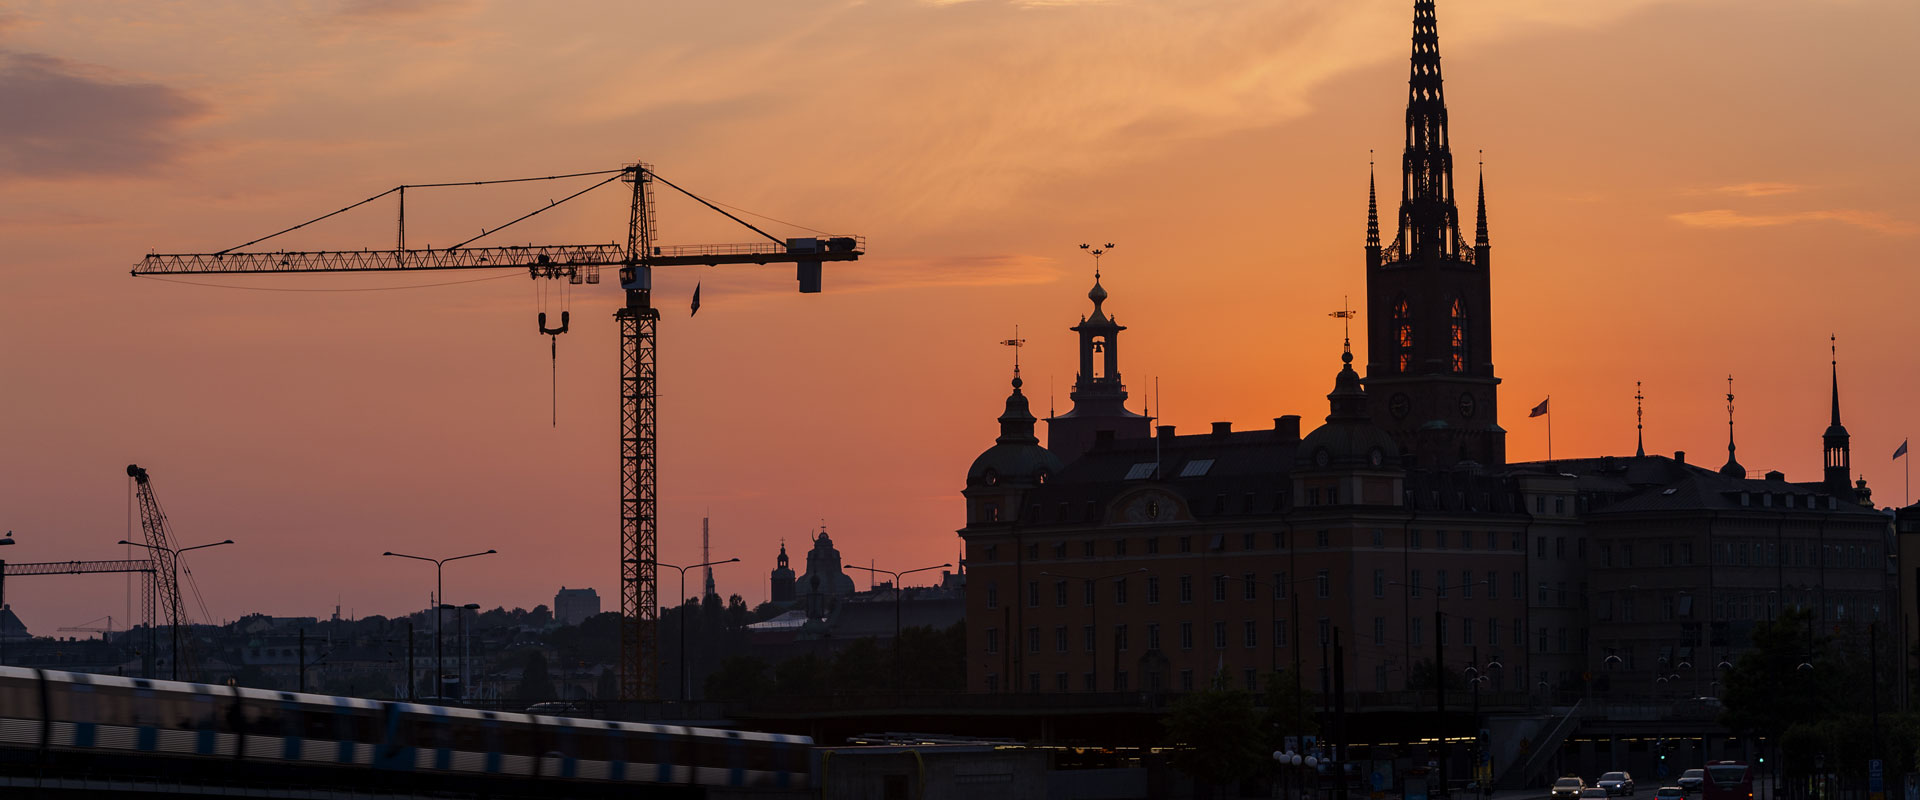 Stockholms stadshus och lyftkran  i nattvy